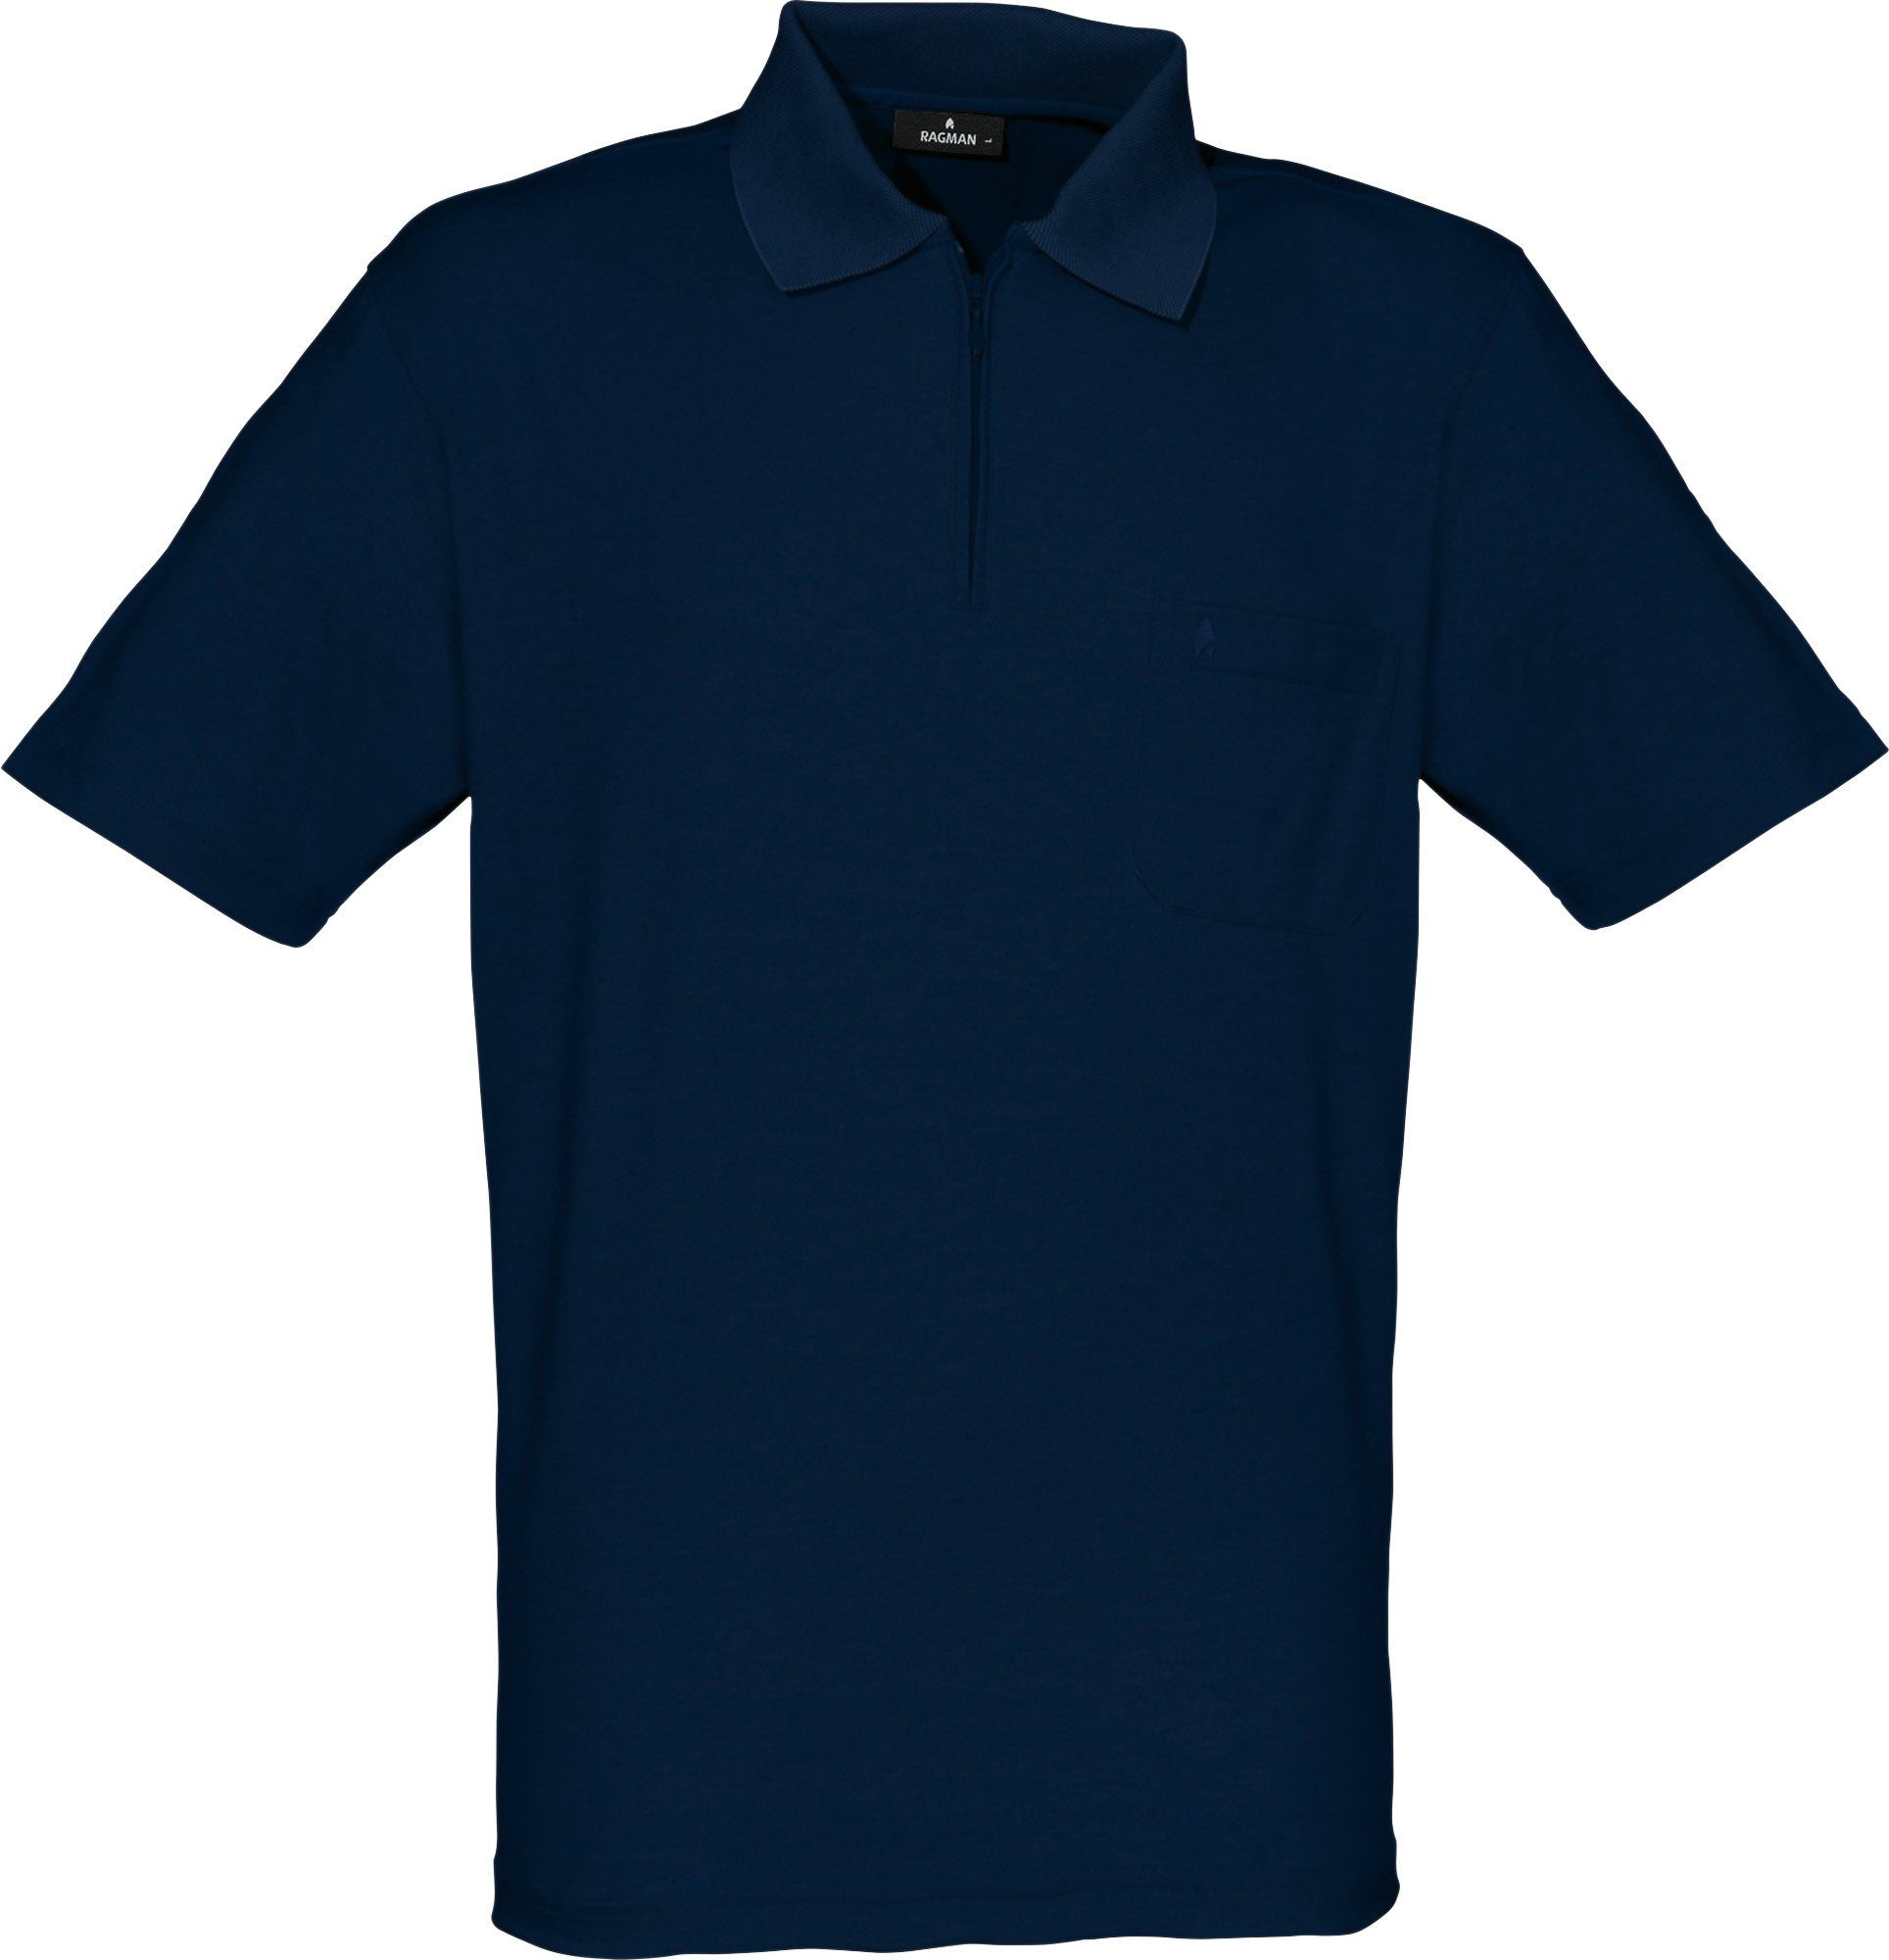 RAGMAN Sweatshirt Herren-Poloshirt Uni marine